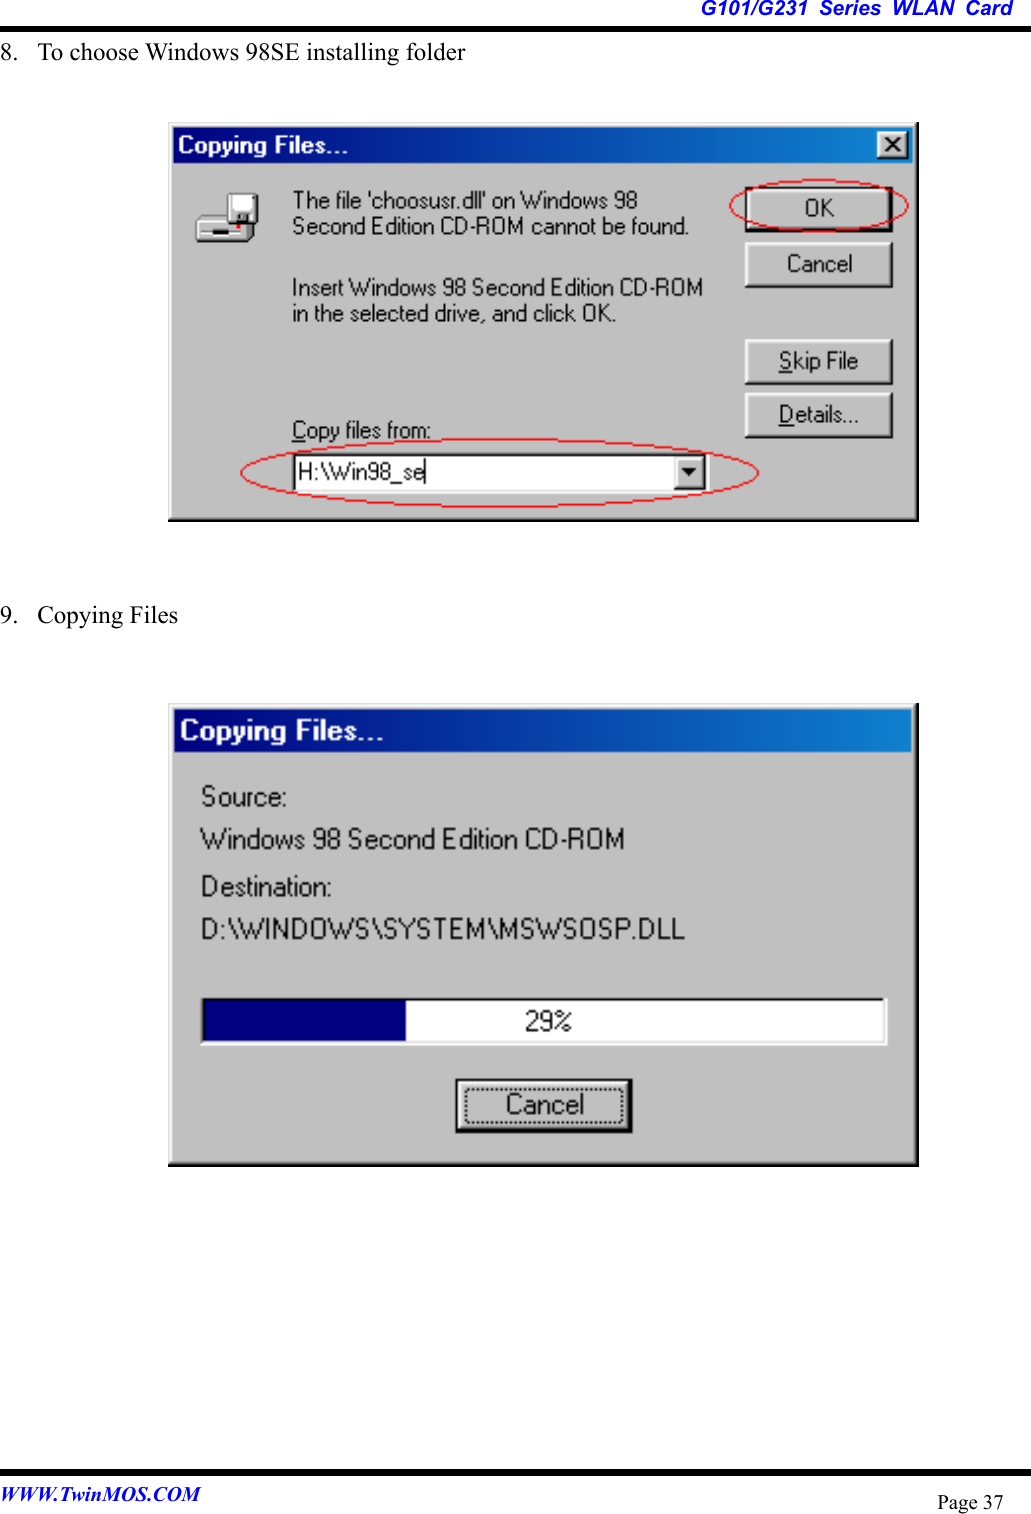   G101/G231 Series WLAN Card WWW.TwinMOS.COM  Page 378.  To choose Windows 98SE installing folder               9. Copying Files                       